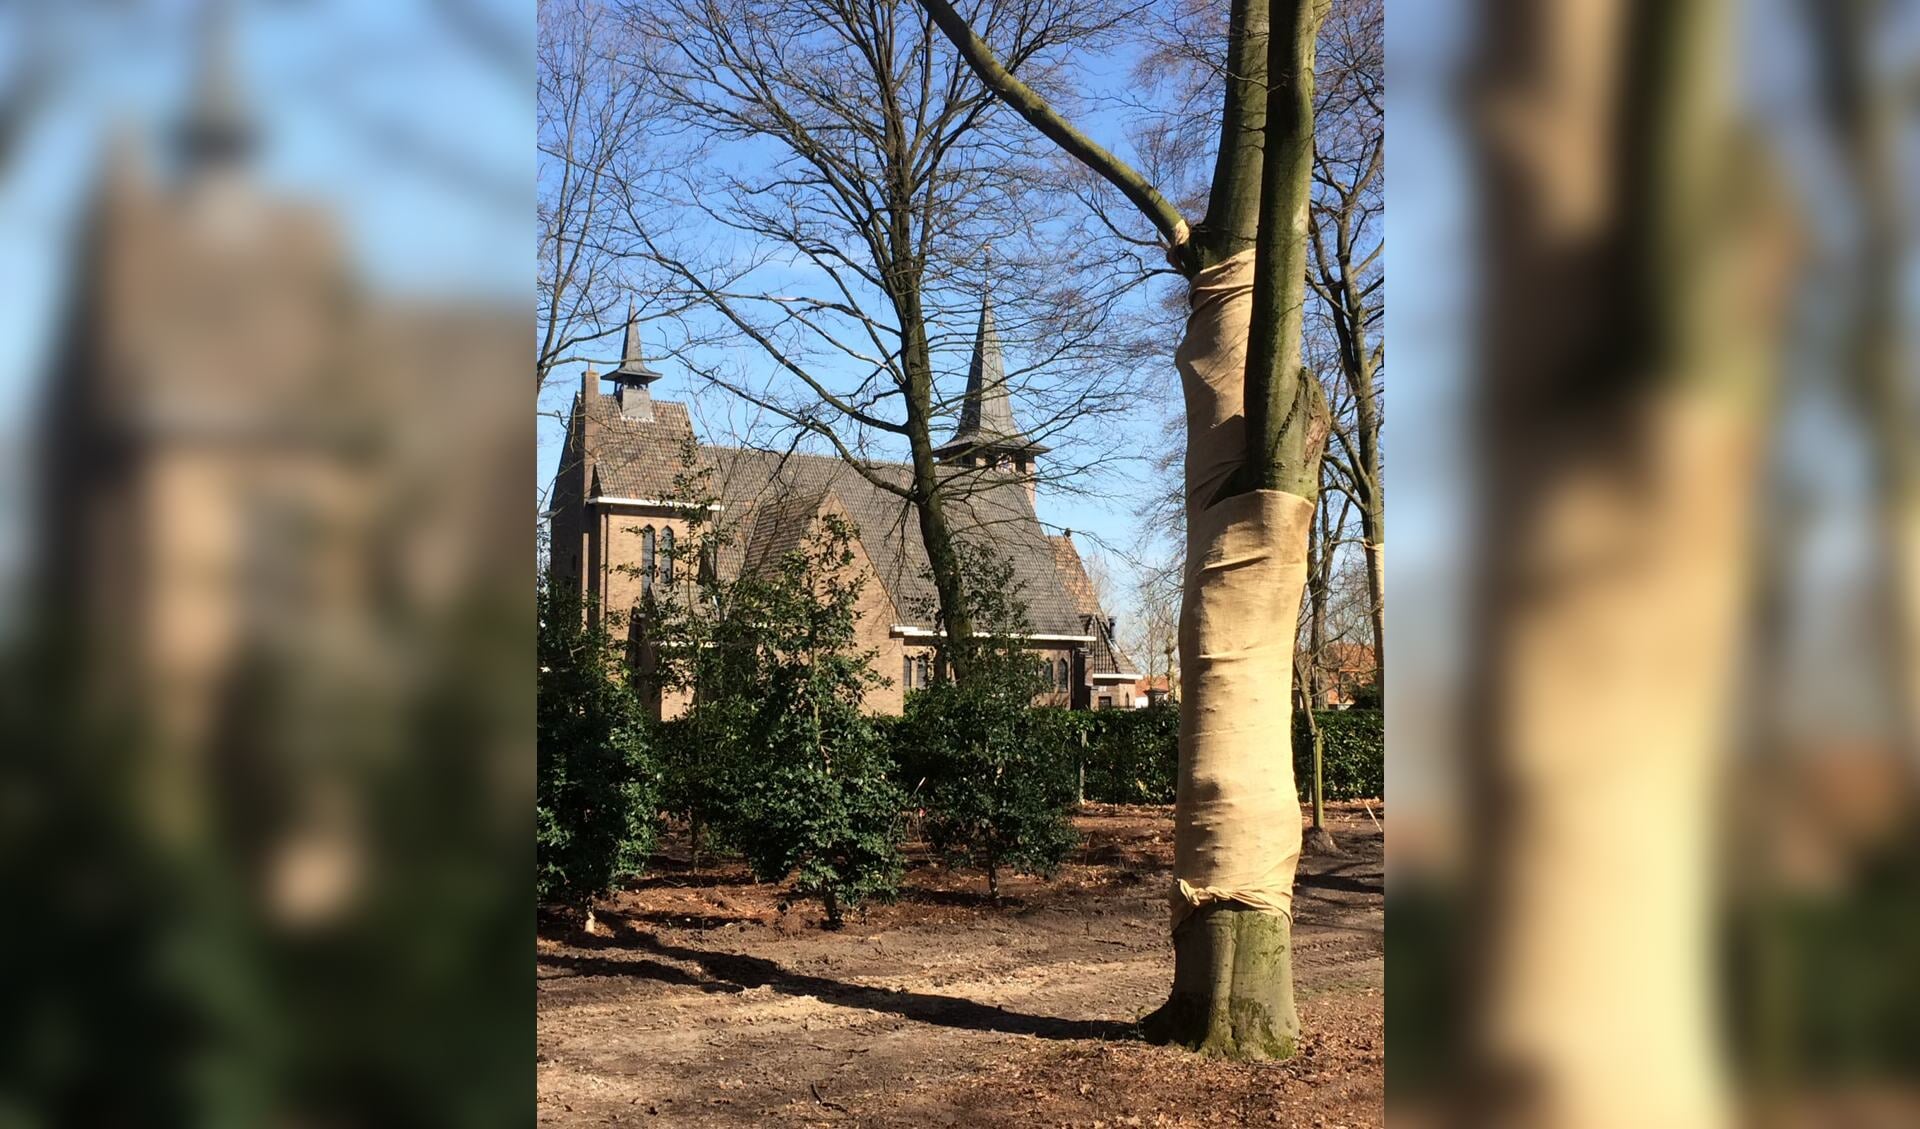 Ter bescherming tegen de zon zijn bomen in het Processiepark ingepakt met jute zakken